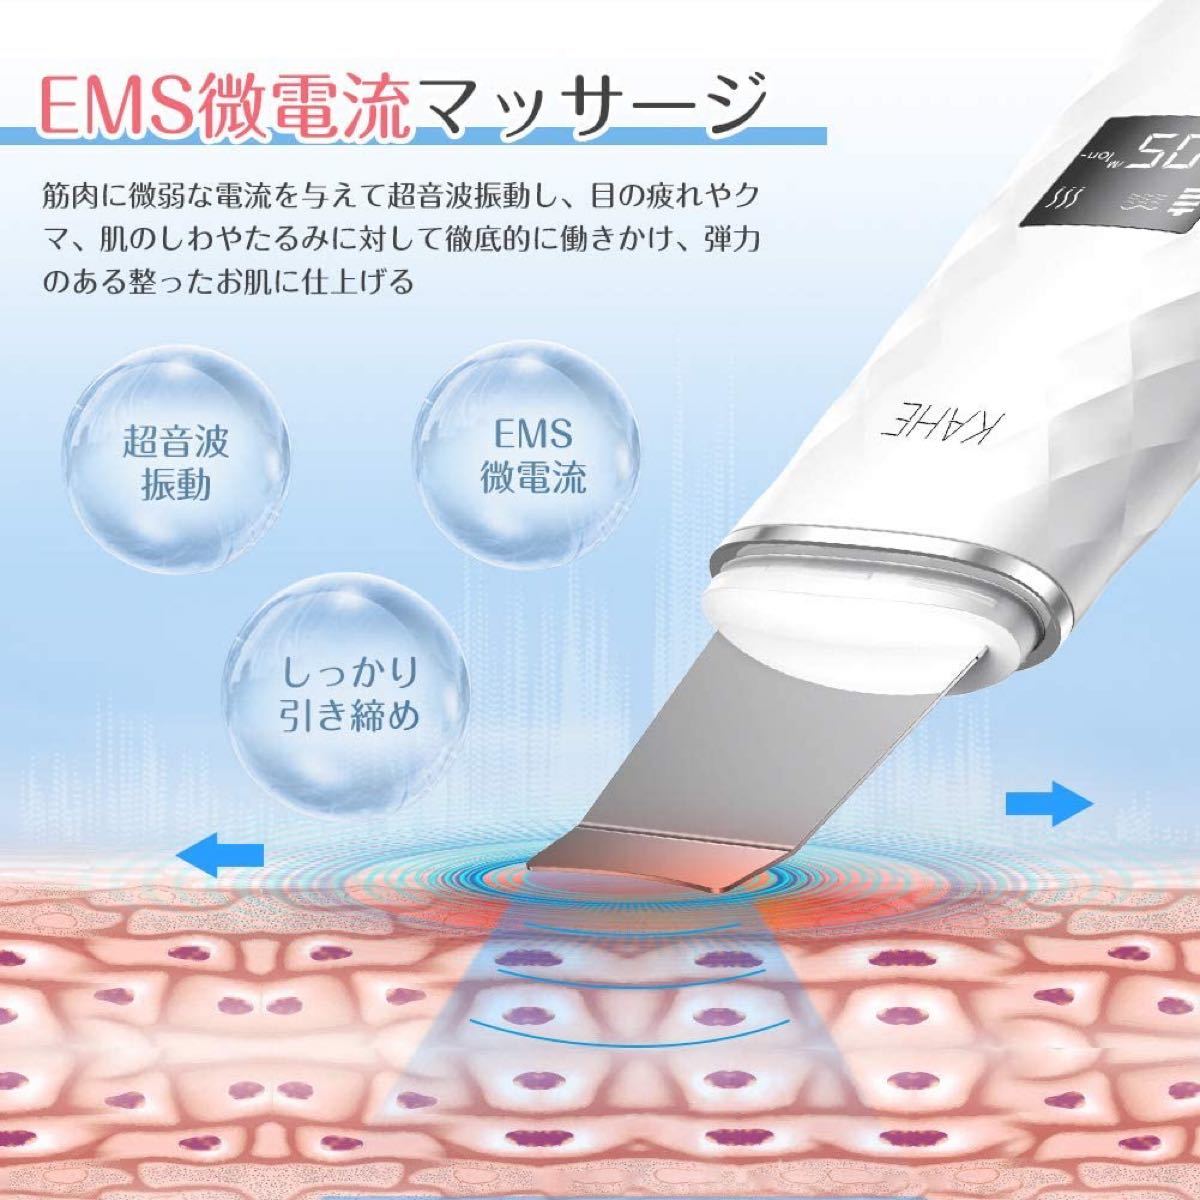 ウォーターピーリング 超音波 美顔器 超音波ピーリング 超音波振動 イオン導入 イオン導出 EMS 1台4役 USB充電式